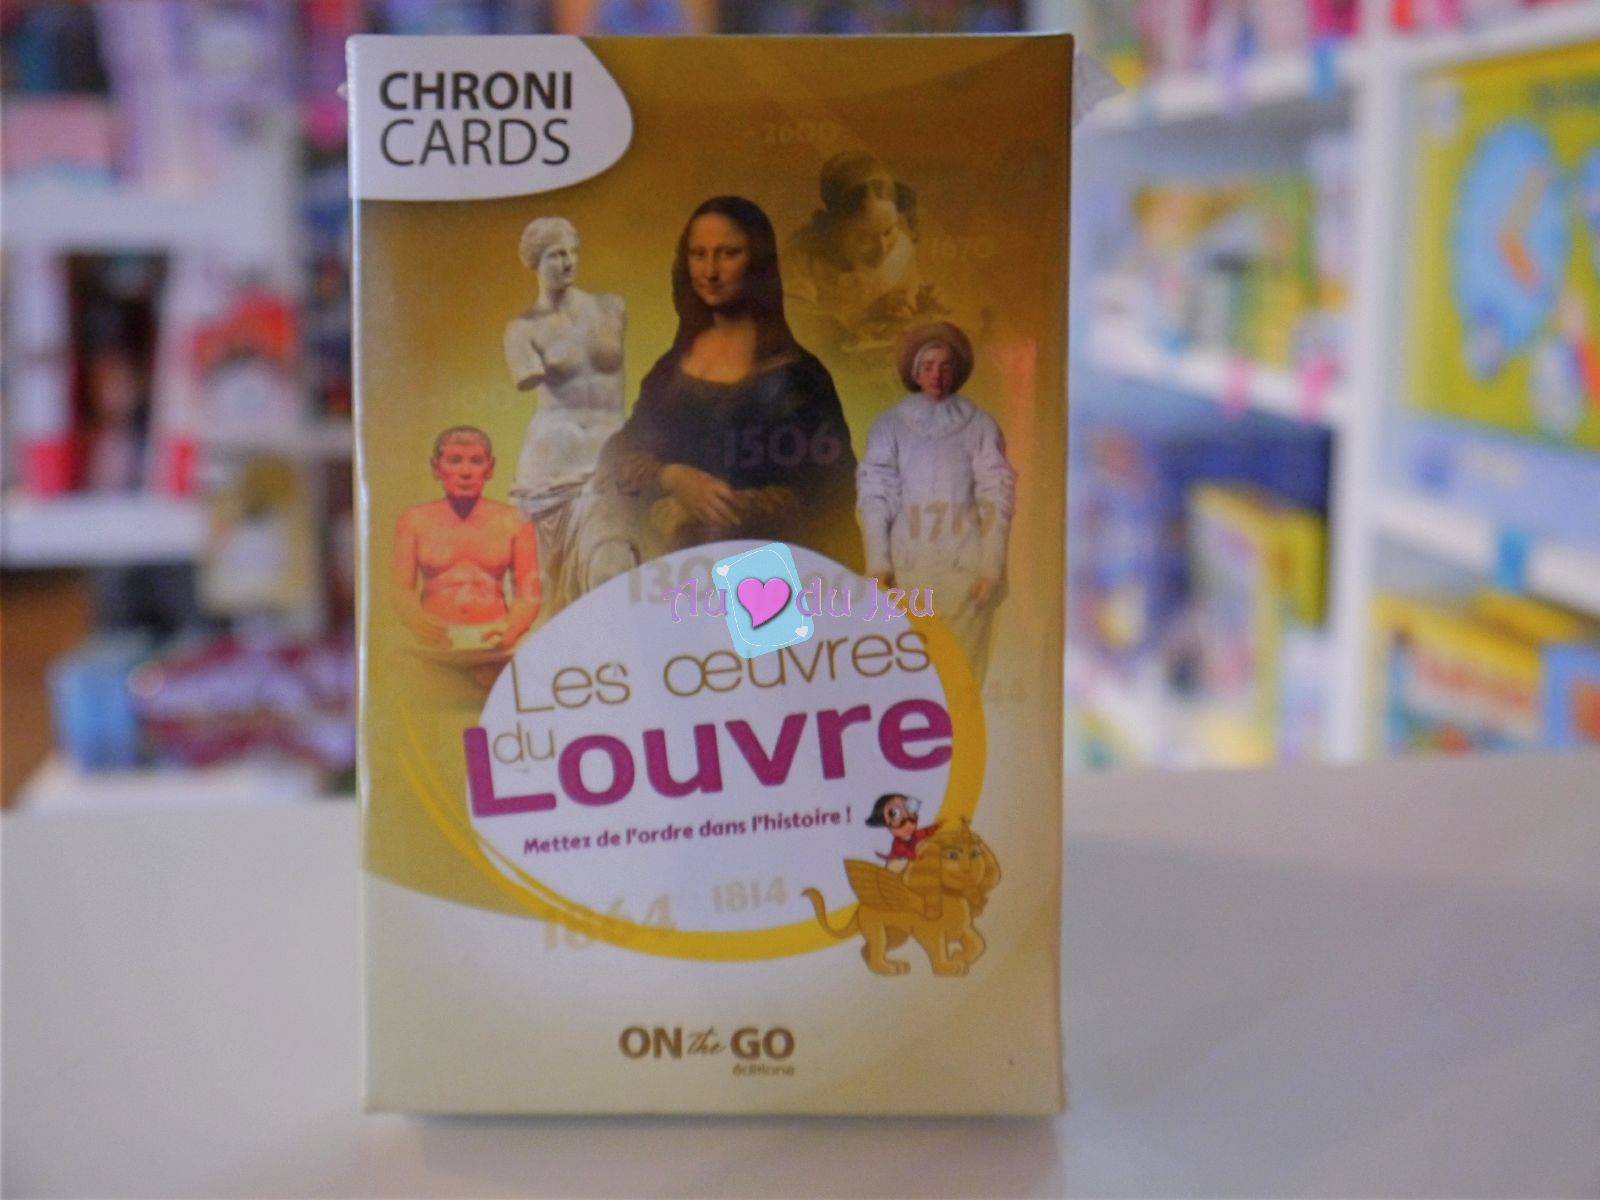 Chronicards - Les Chefs d'Oeuvres du Louvre